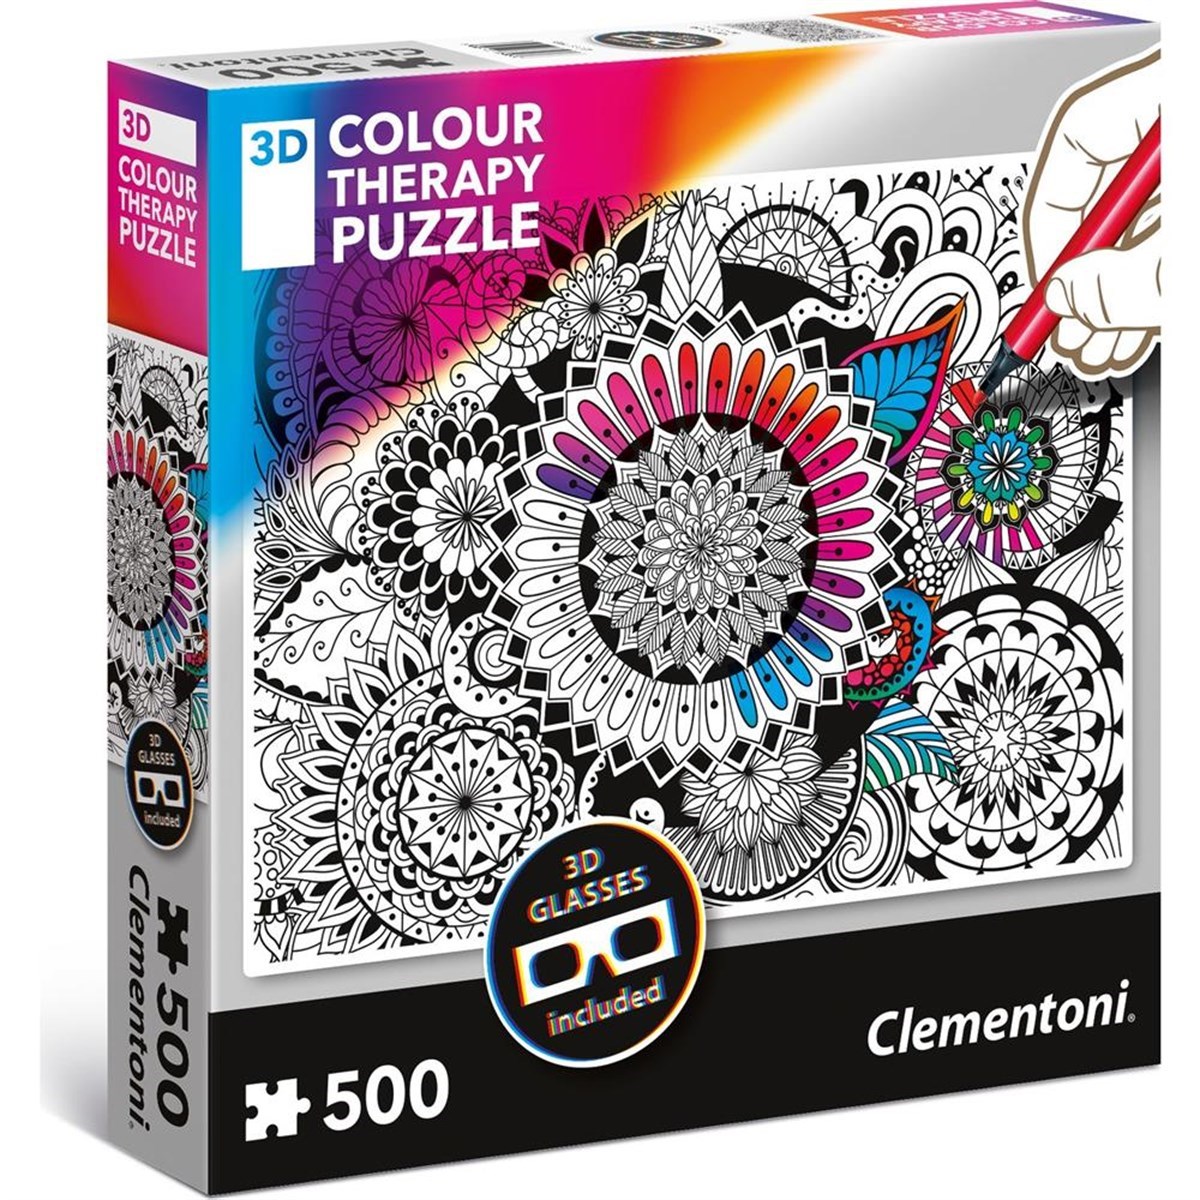 Clementoni- 3d colour therapy puzzle